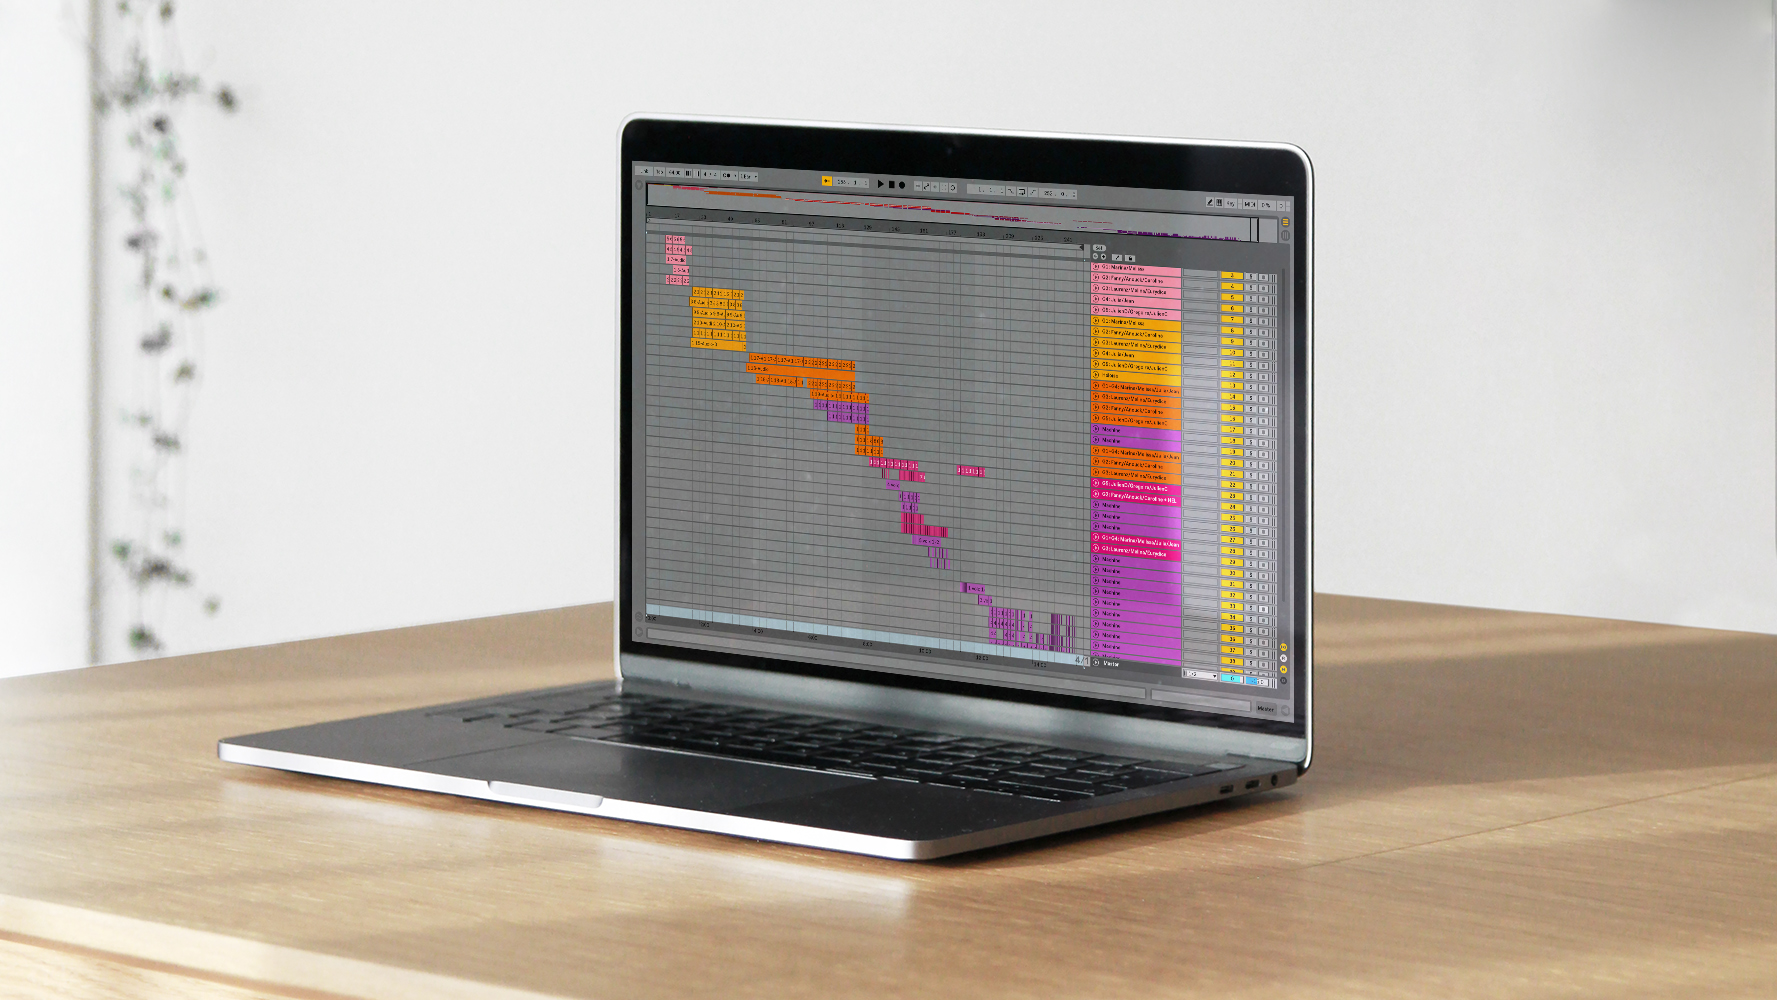 Photographie d'un ordinateur sur une table en bois présentant une capture d'écran du fichier Ableton de la composition musicale Nuit Lavande. Les pistes sonores sont organisées en cascade et par nuances de couleurs du rose au violet.